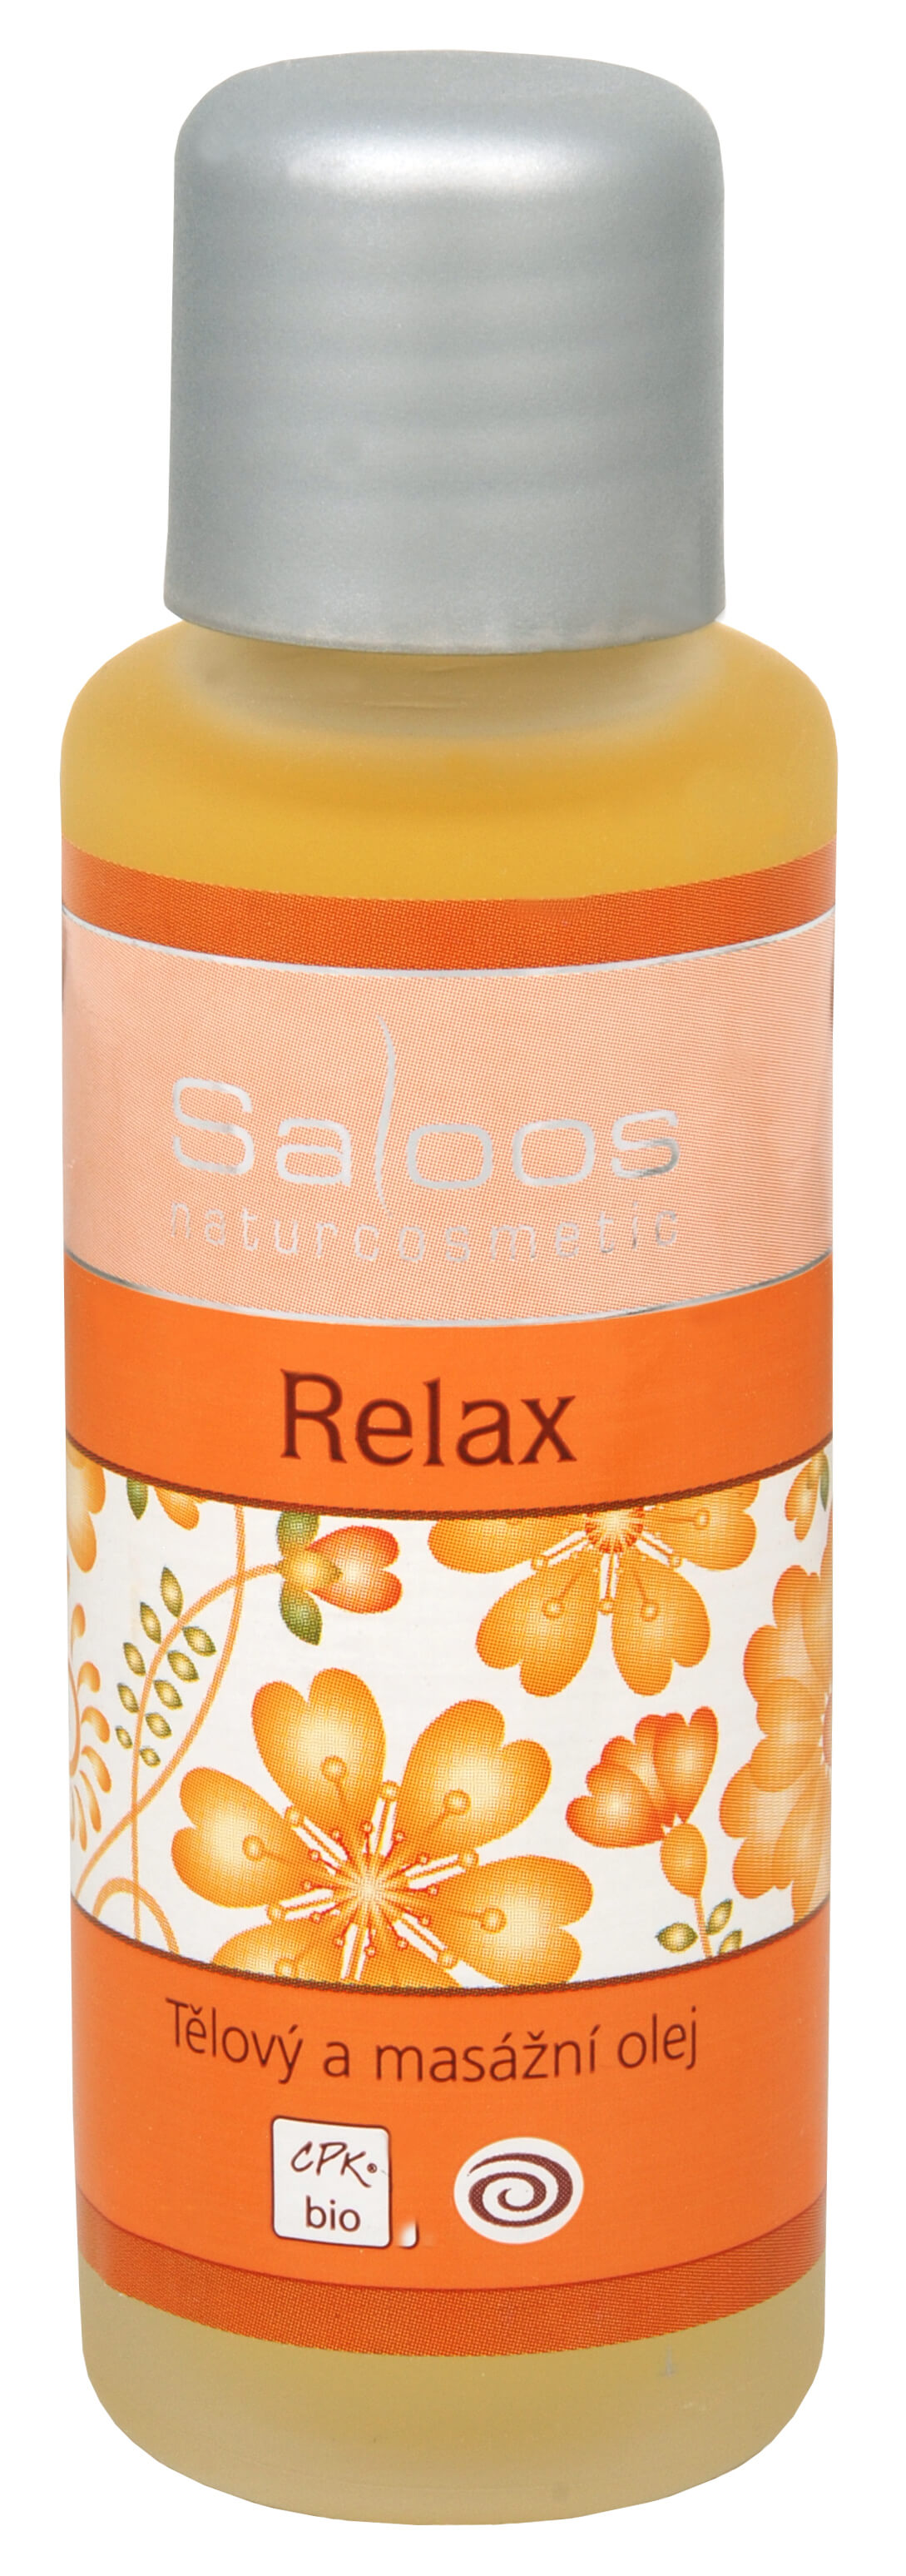 Saloos Bio tělový a masážní olej - Relax 50 ml